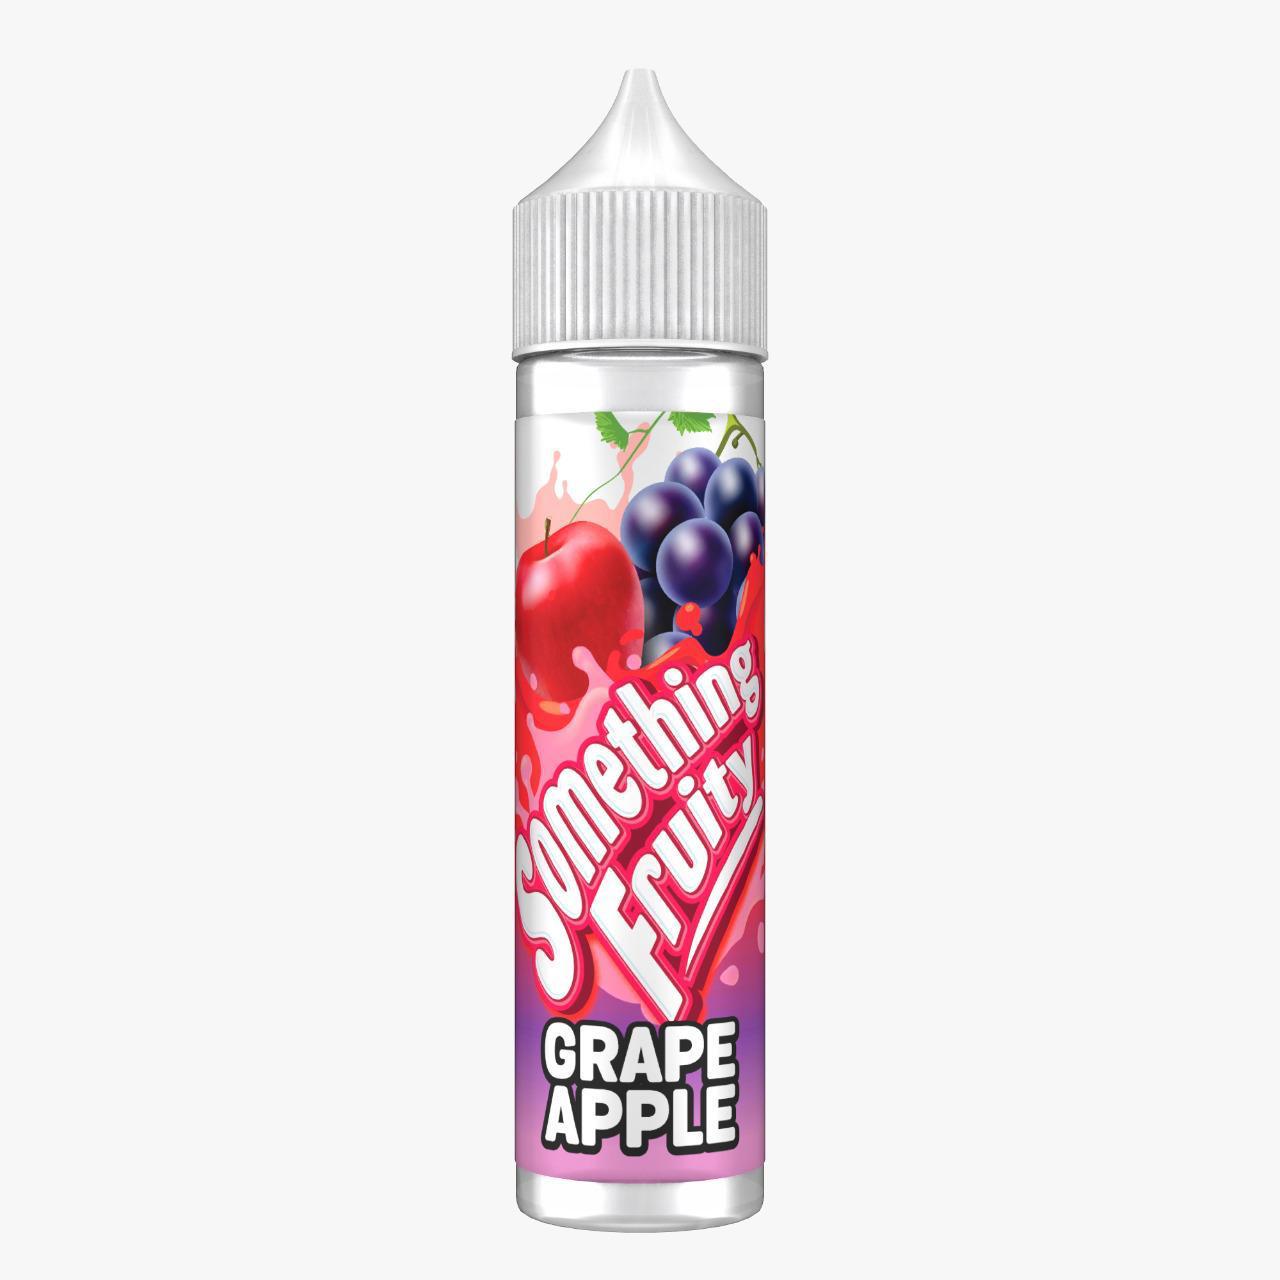 Something Fruity 50ml E Liquid 50/50VGPG E Juice 0MG Vape Liquid GRAPE APPLE